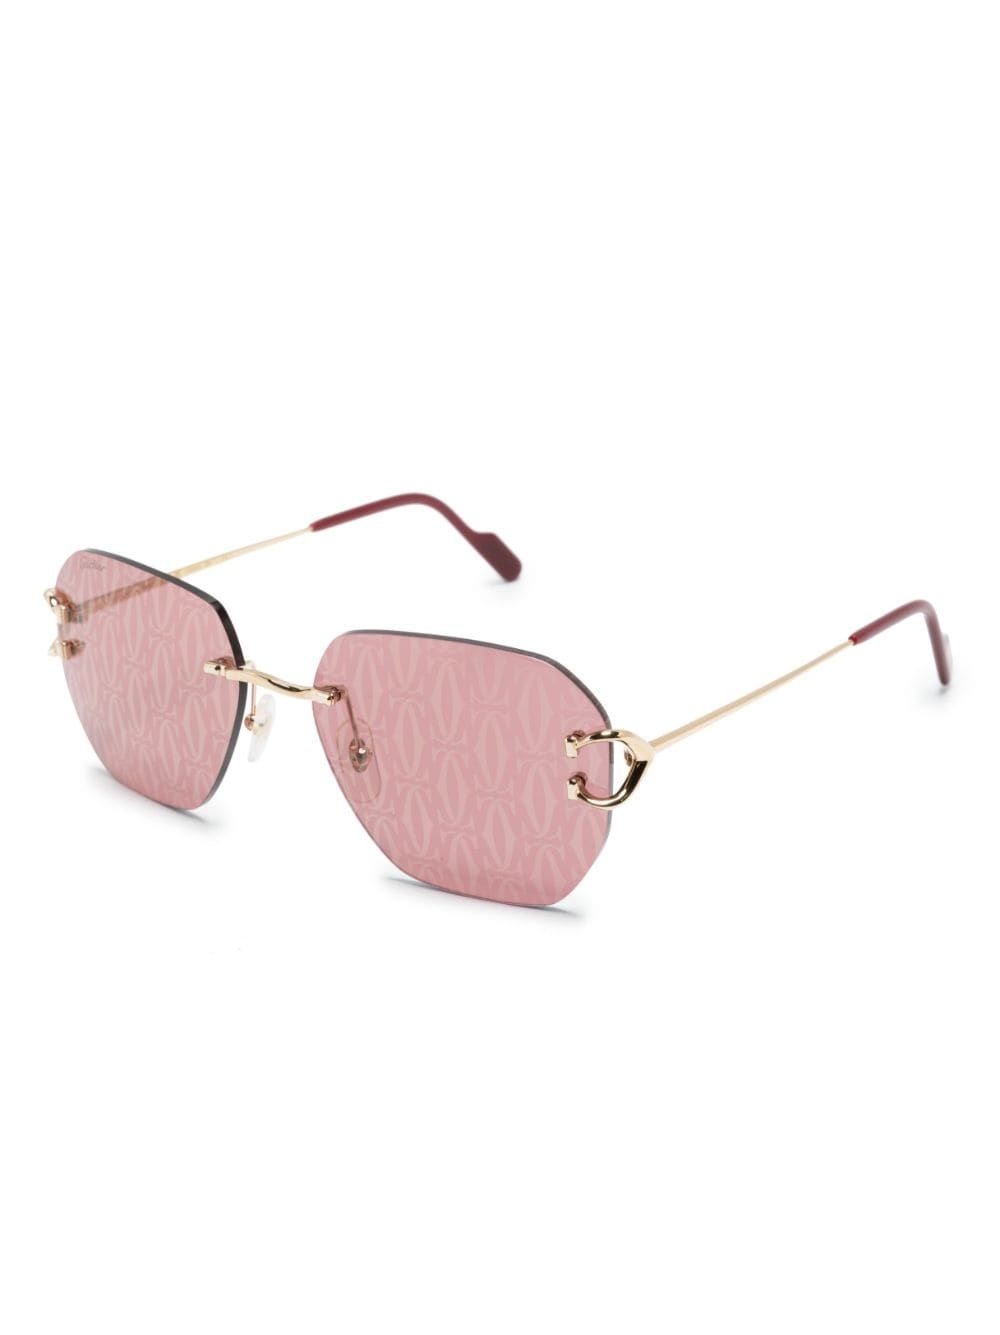 logo-decal frameless sunglasses - 2